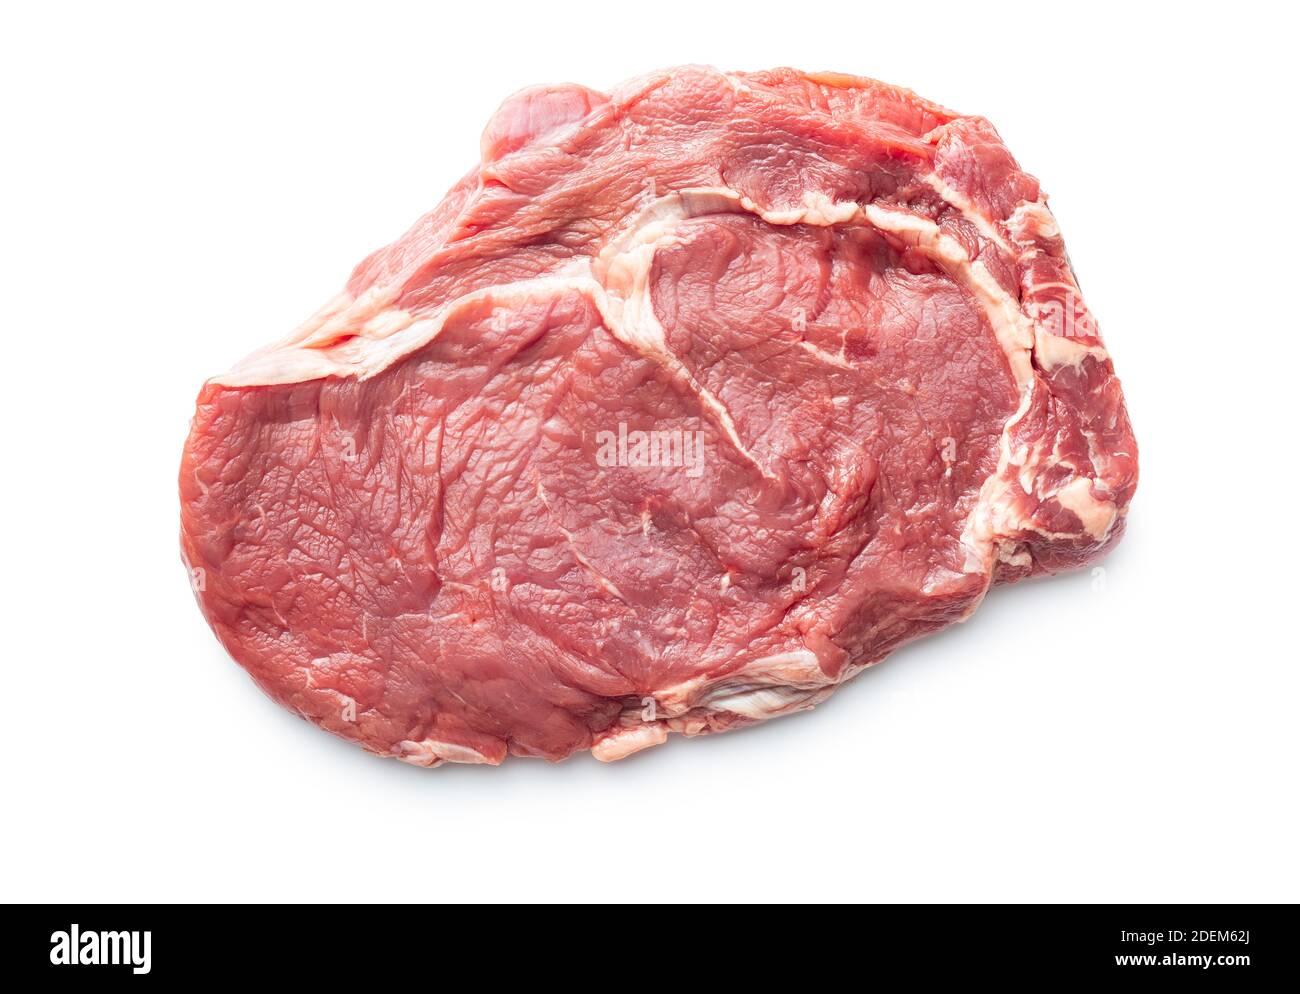 Steak de ribeye cru coupé en tranches, isolé sur fond blanc. Vue de dessus. Banque D'Images